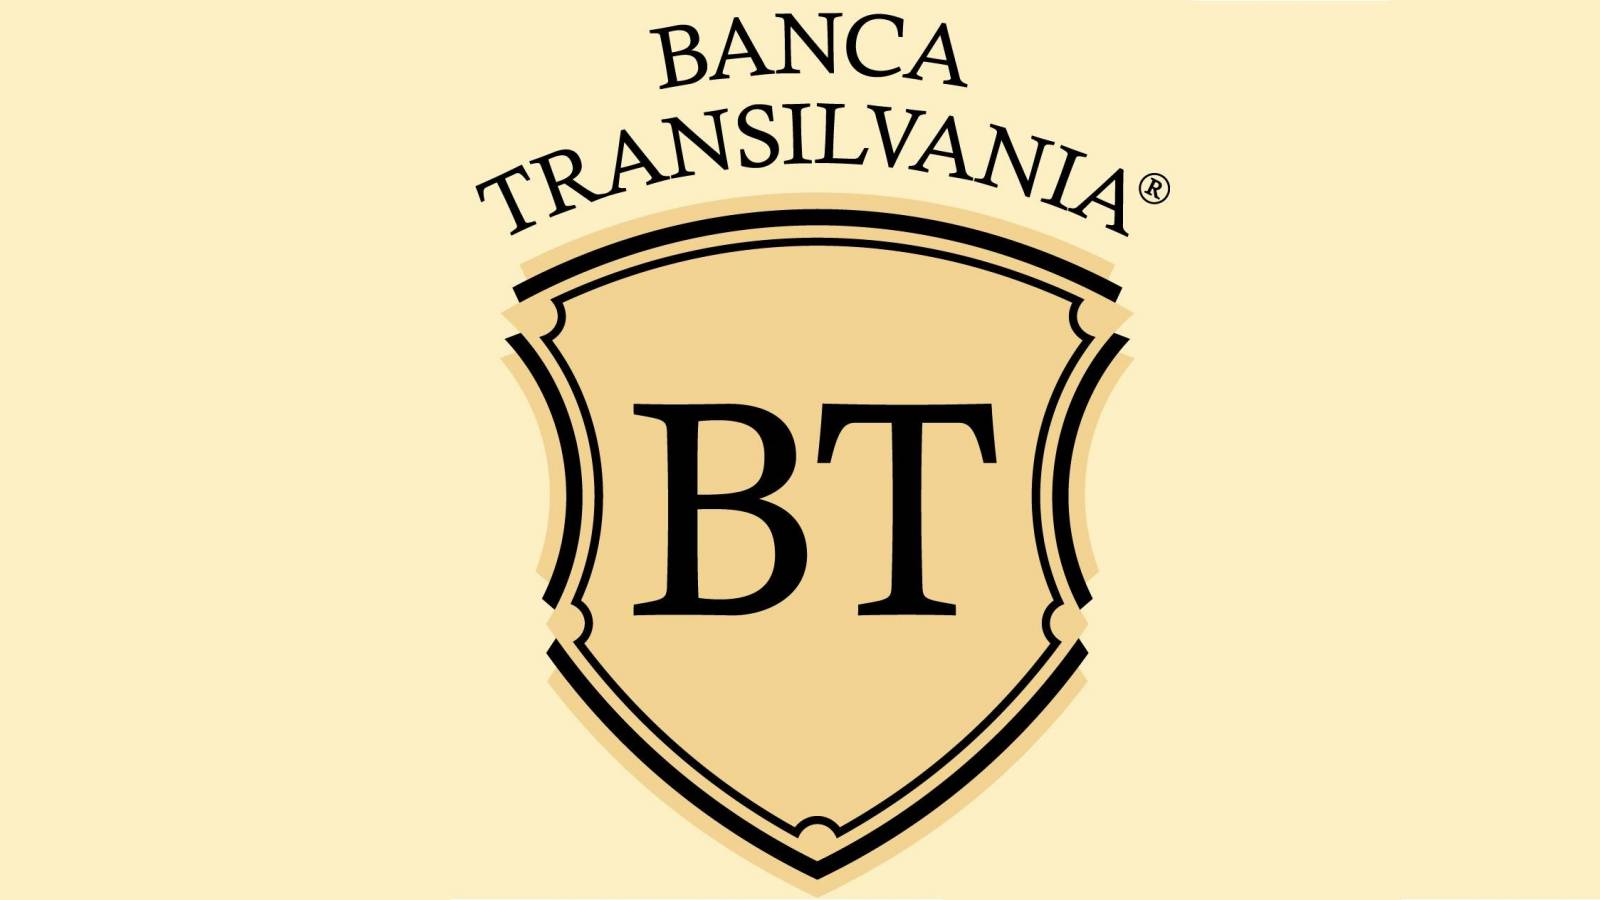 BANCA Transilvania emite una ALERTA extremadamente importante para todos los clientes rumanos